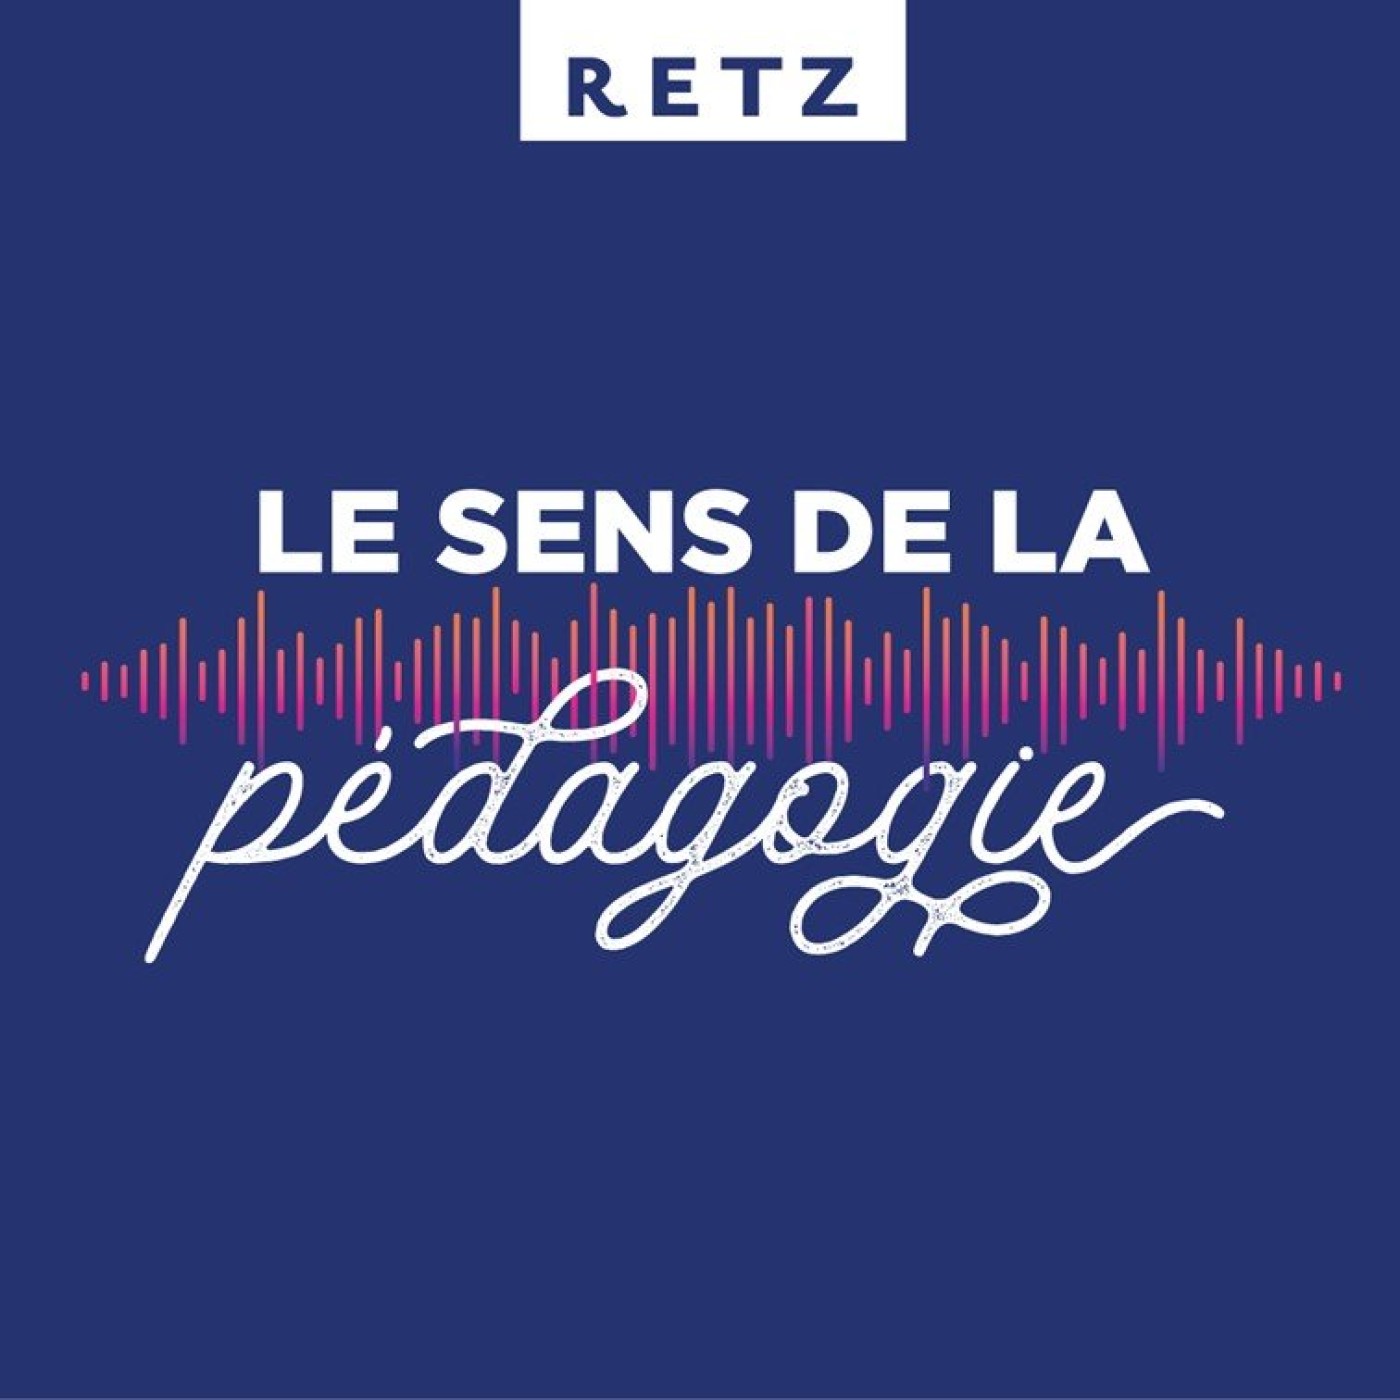 Retz - Le sens de la pédagogie:Editions Retz - Le sens de la pédagogie